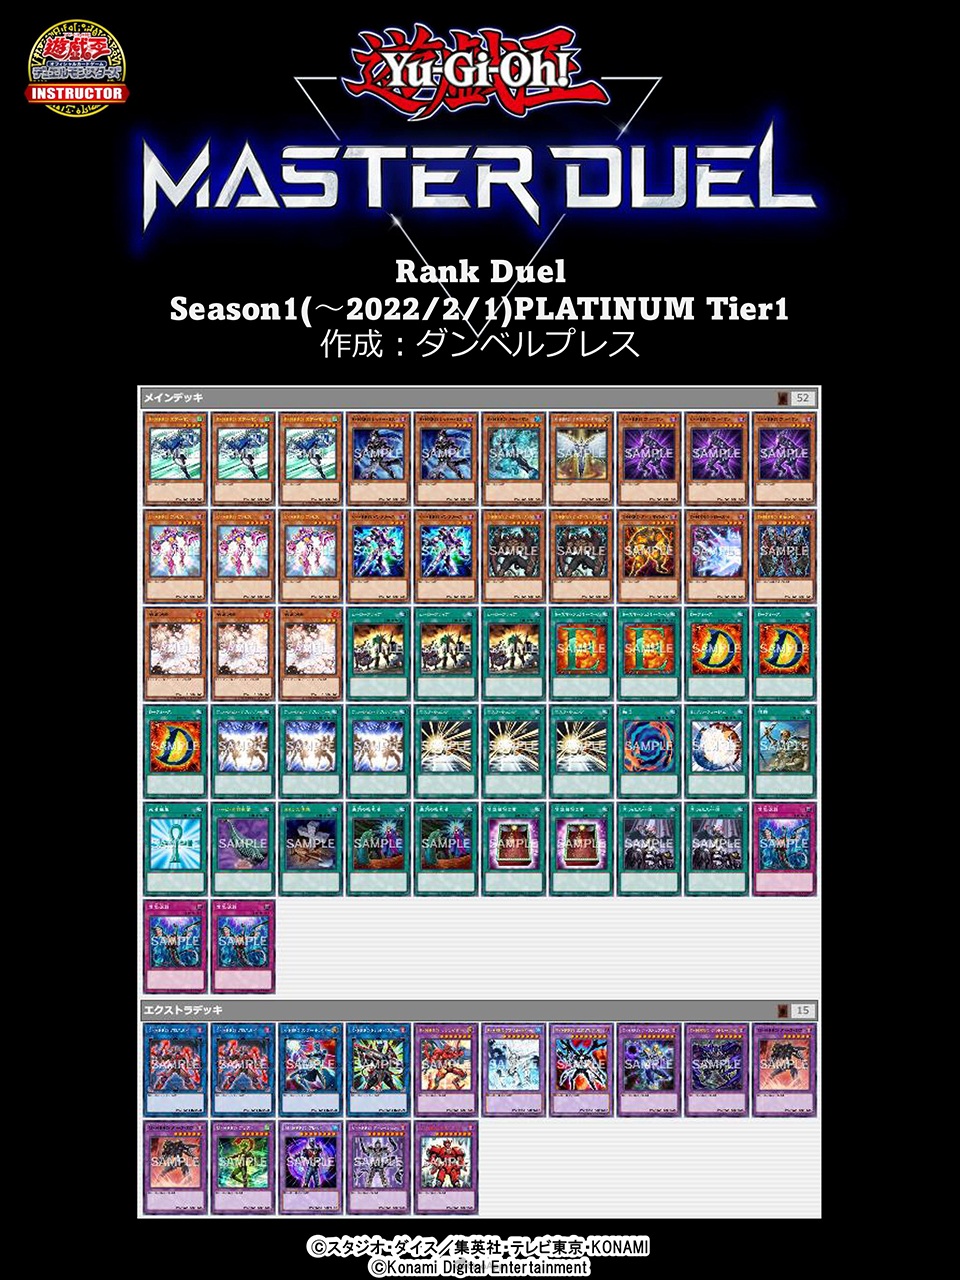 《遊戲王 Master Duel》突破千萬下載！Season 1白金牌組公開-第22張